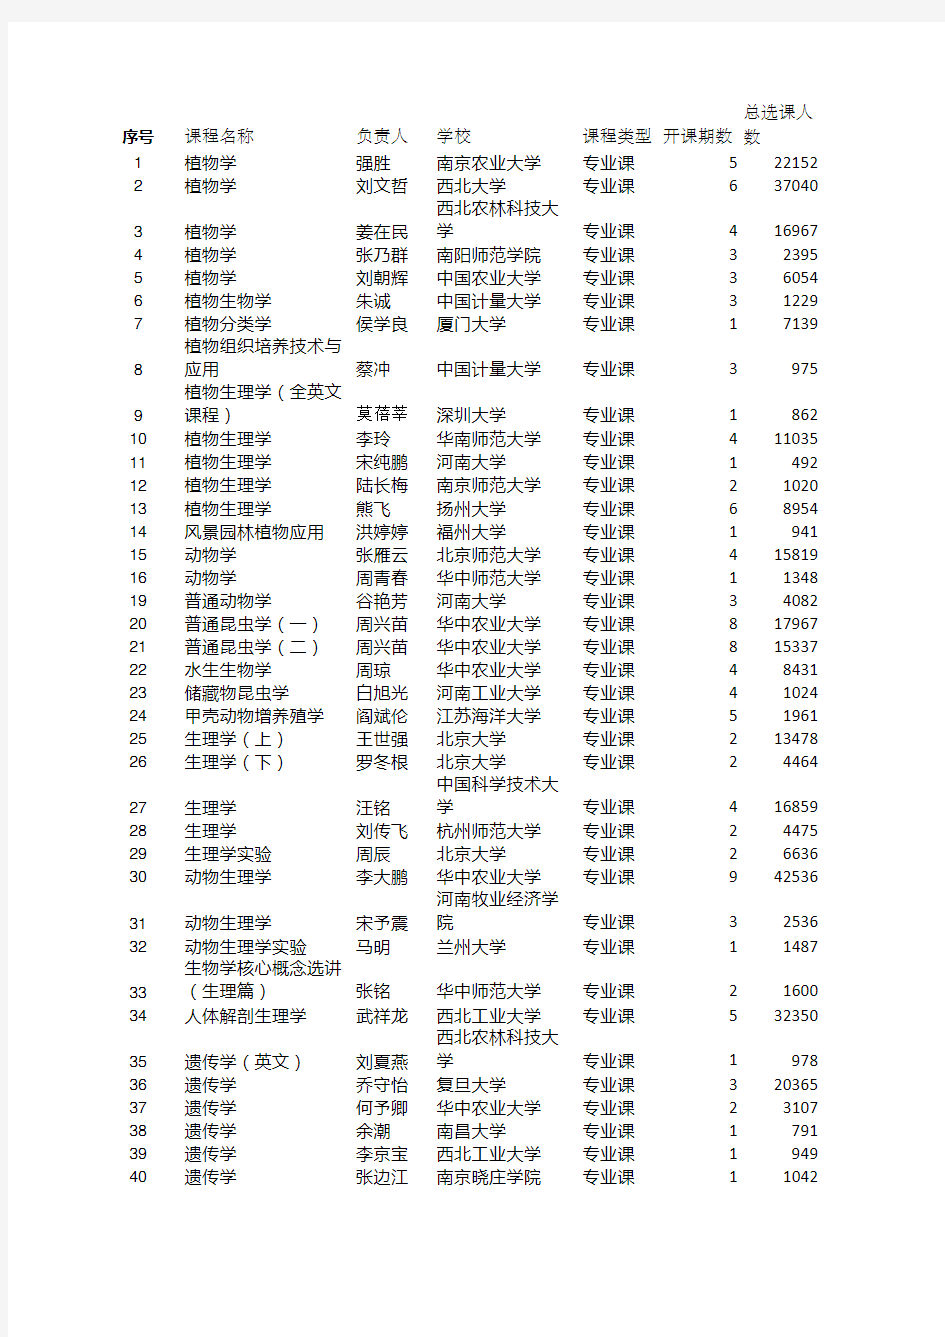 中国大学MOOC 生物类专业课程表(2020年)优质课程